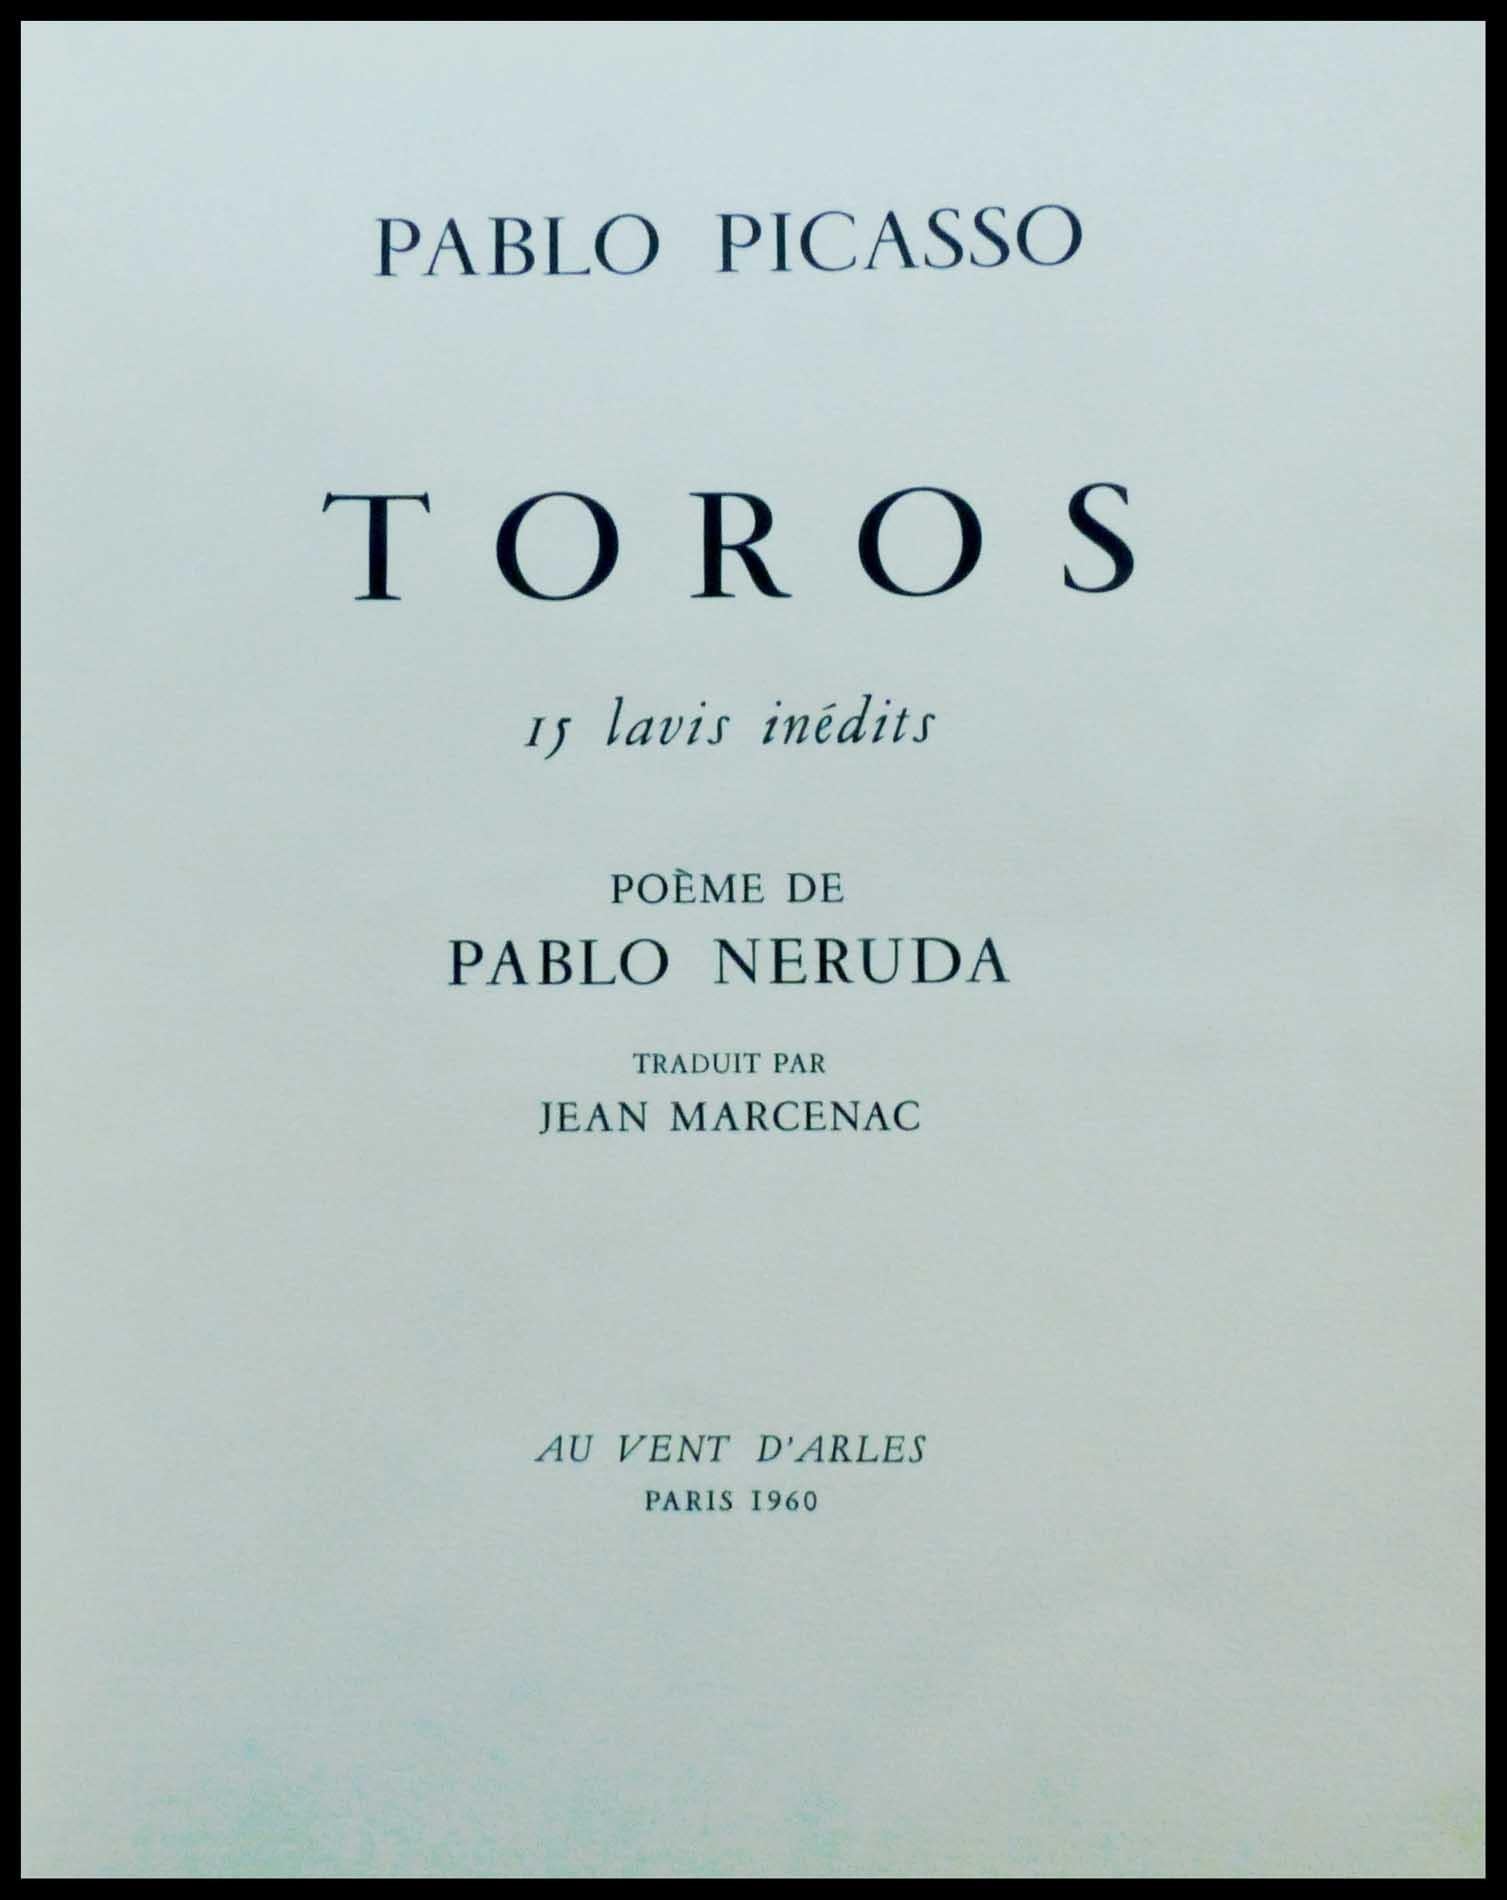 Pablo PICASSO
Los Toros - 1960
15 pochoirs originaux 
pochoir réalisé sur vélin d'arches par Daniel Jacomet
Imprimé par Mourlot

14 pochoirs signés et datés dans la planche
1 pochoir signé par l'artiste 
Dimension : 38 x 28 centimètres
Très bonne